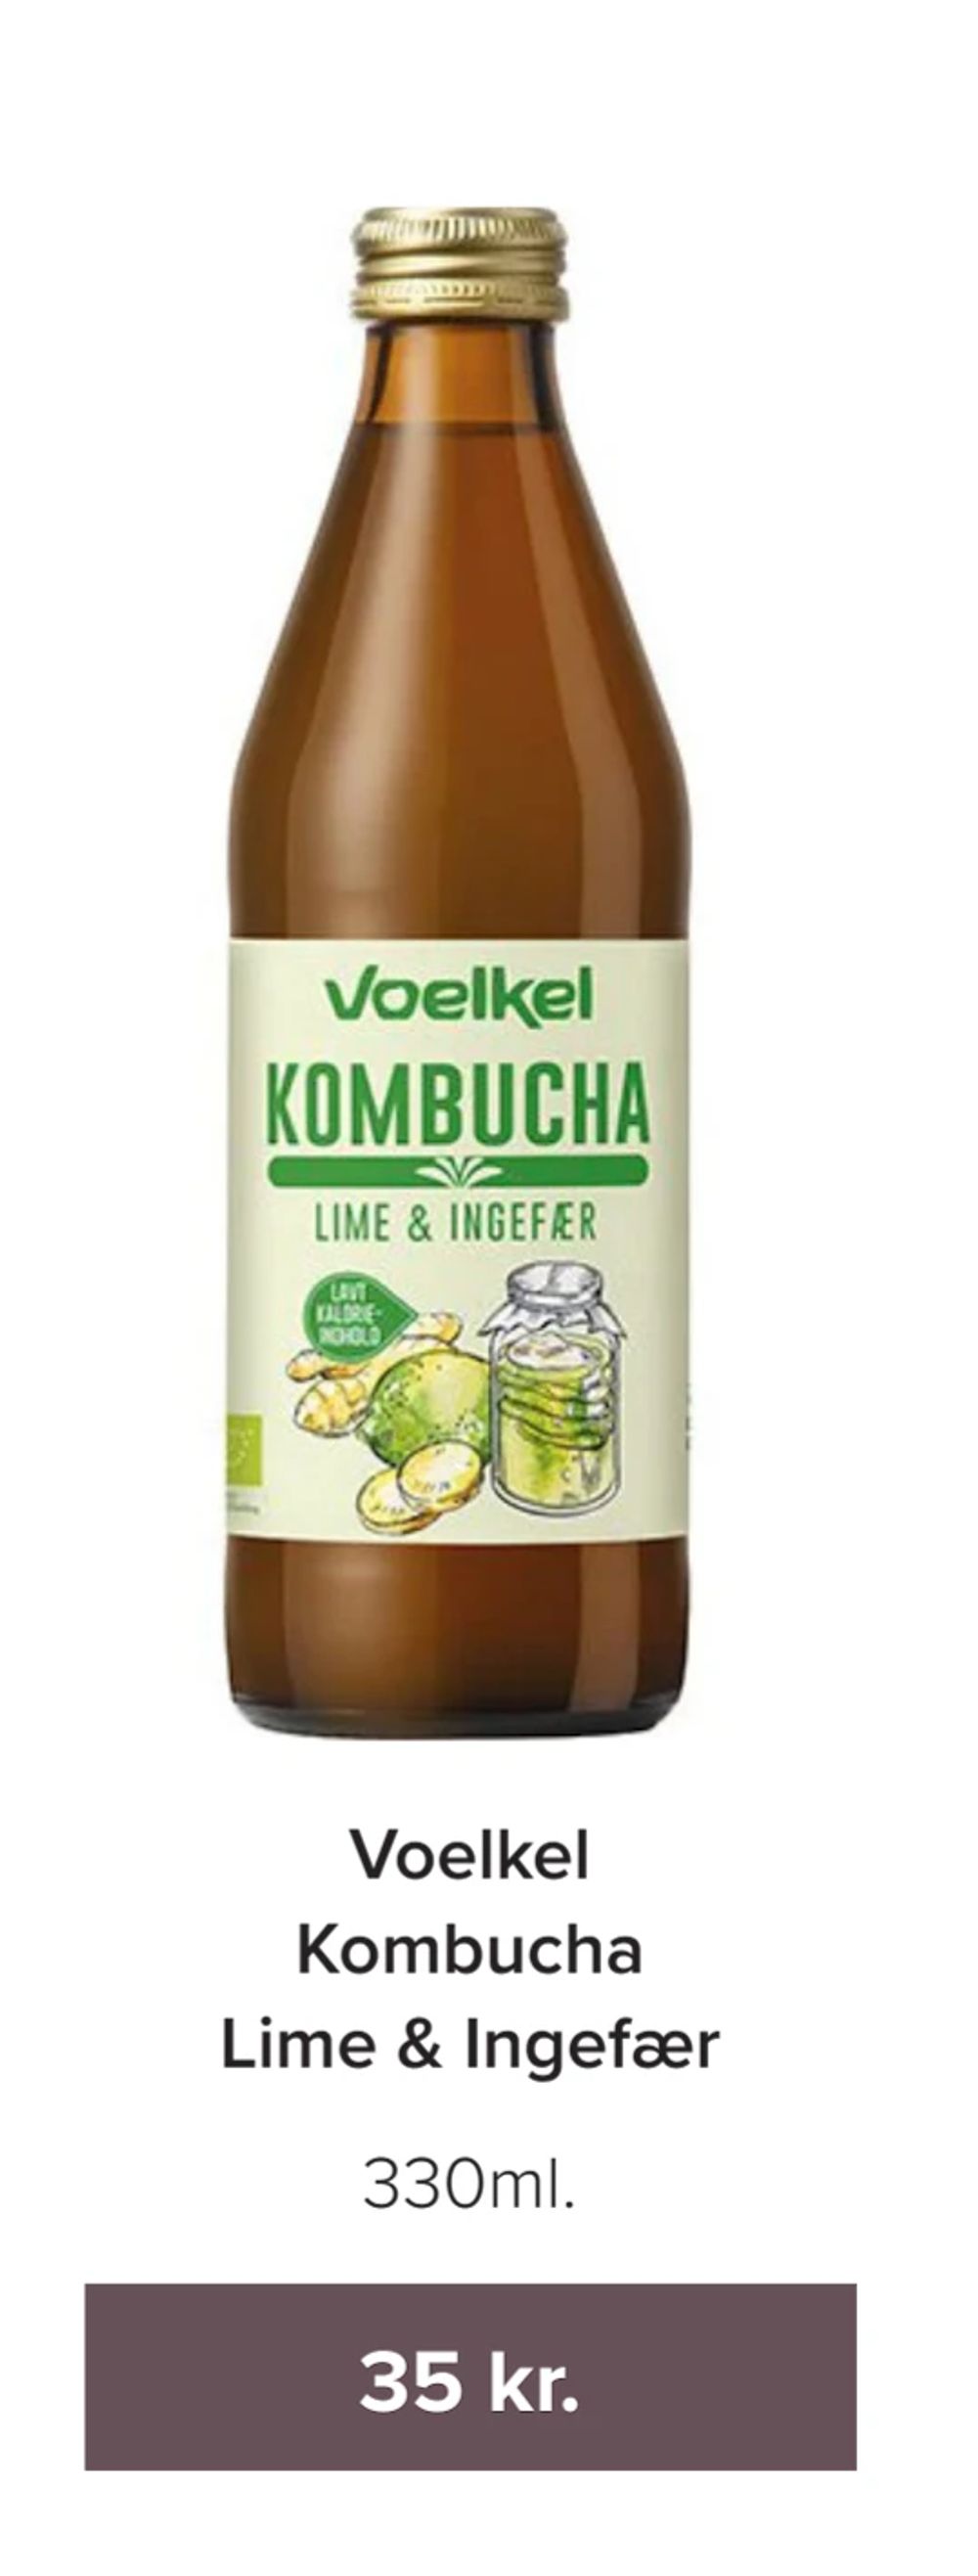 Tilbud på Voelkel Kombucha Lime & Ingefær fra Helsemin til 35 kr.